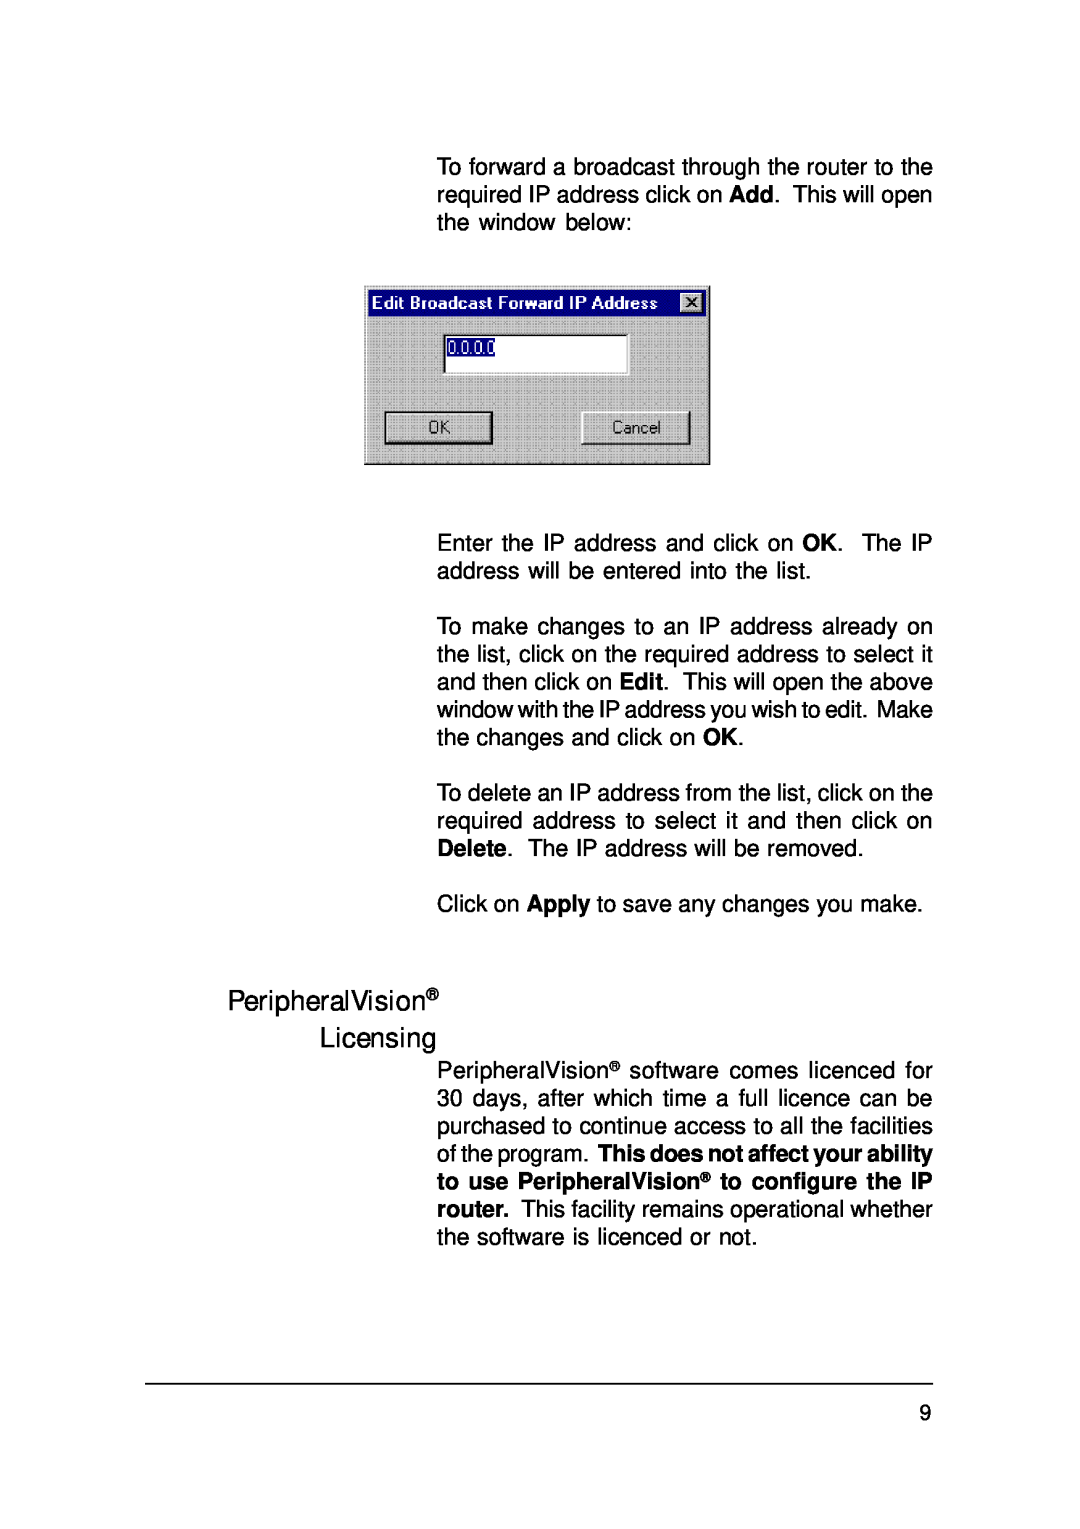 Ringdale IP Router manual PeripheralVision Licensing 